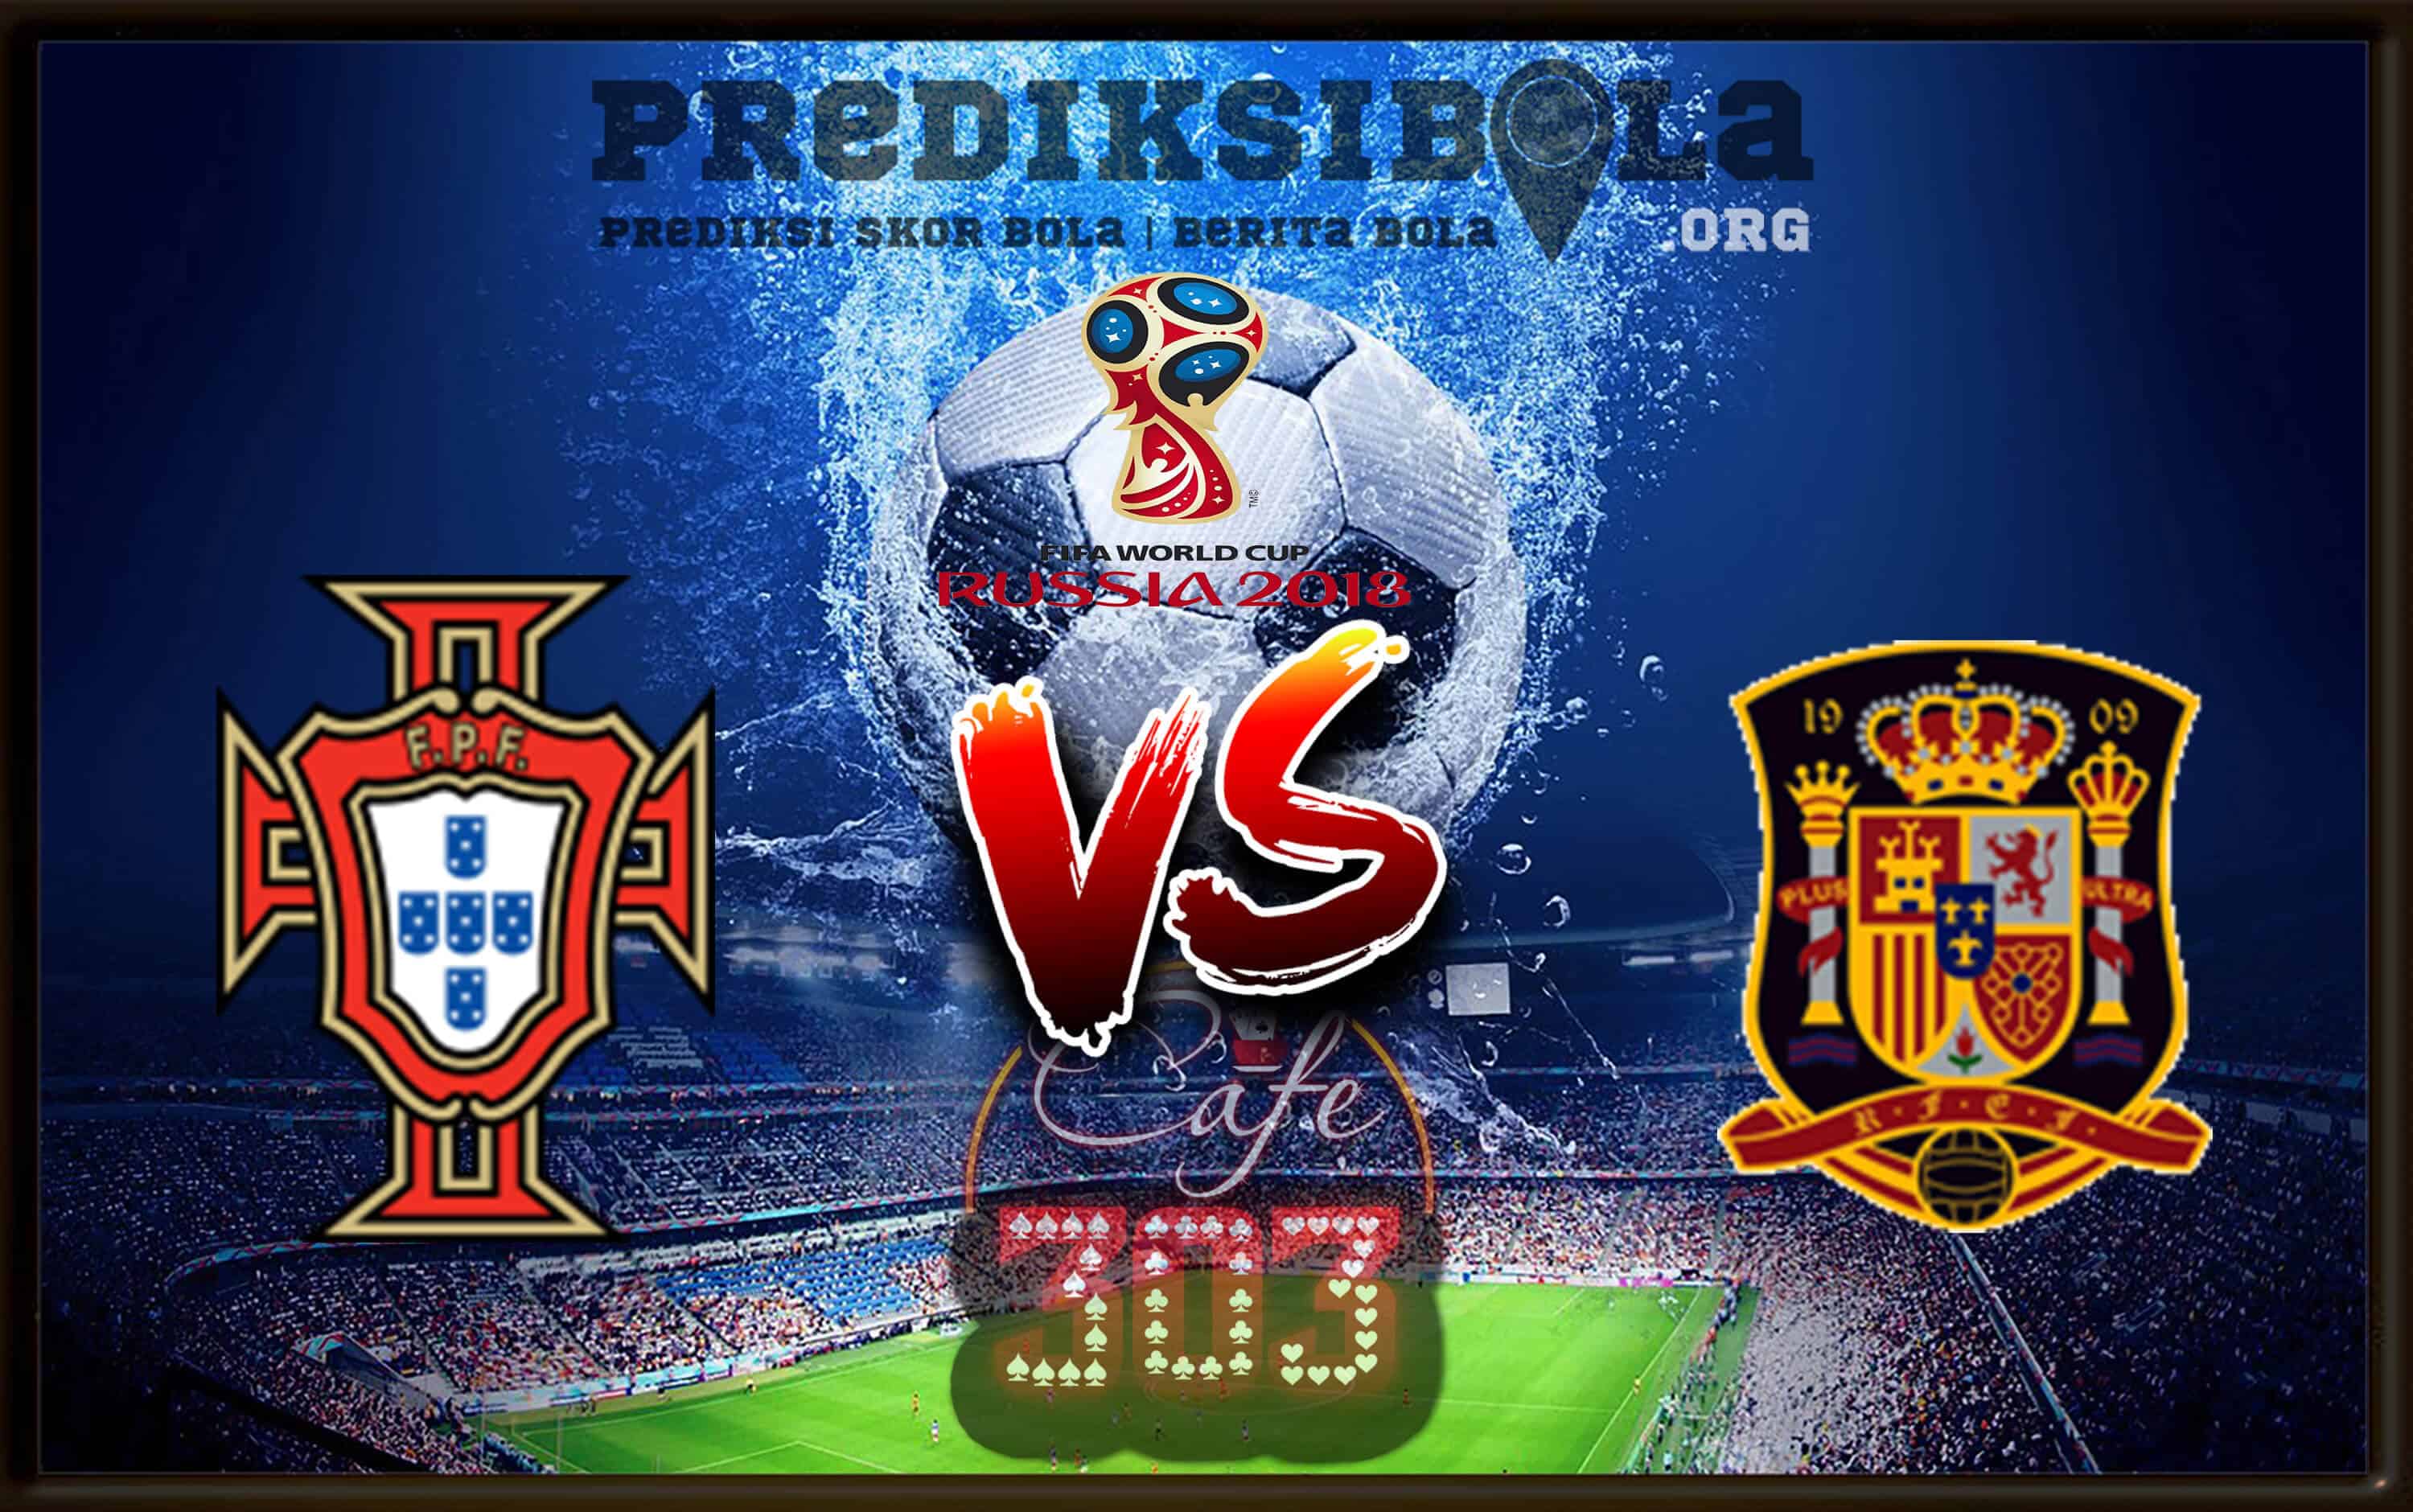 Prediksi Skor Portugal Vs Spain 16 Juni 2018